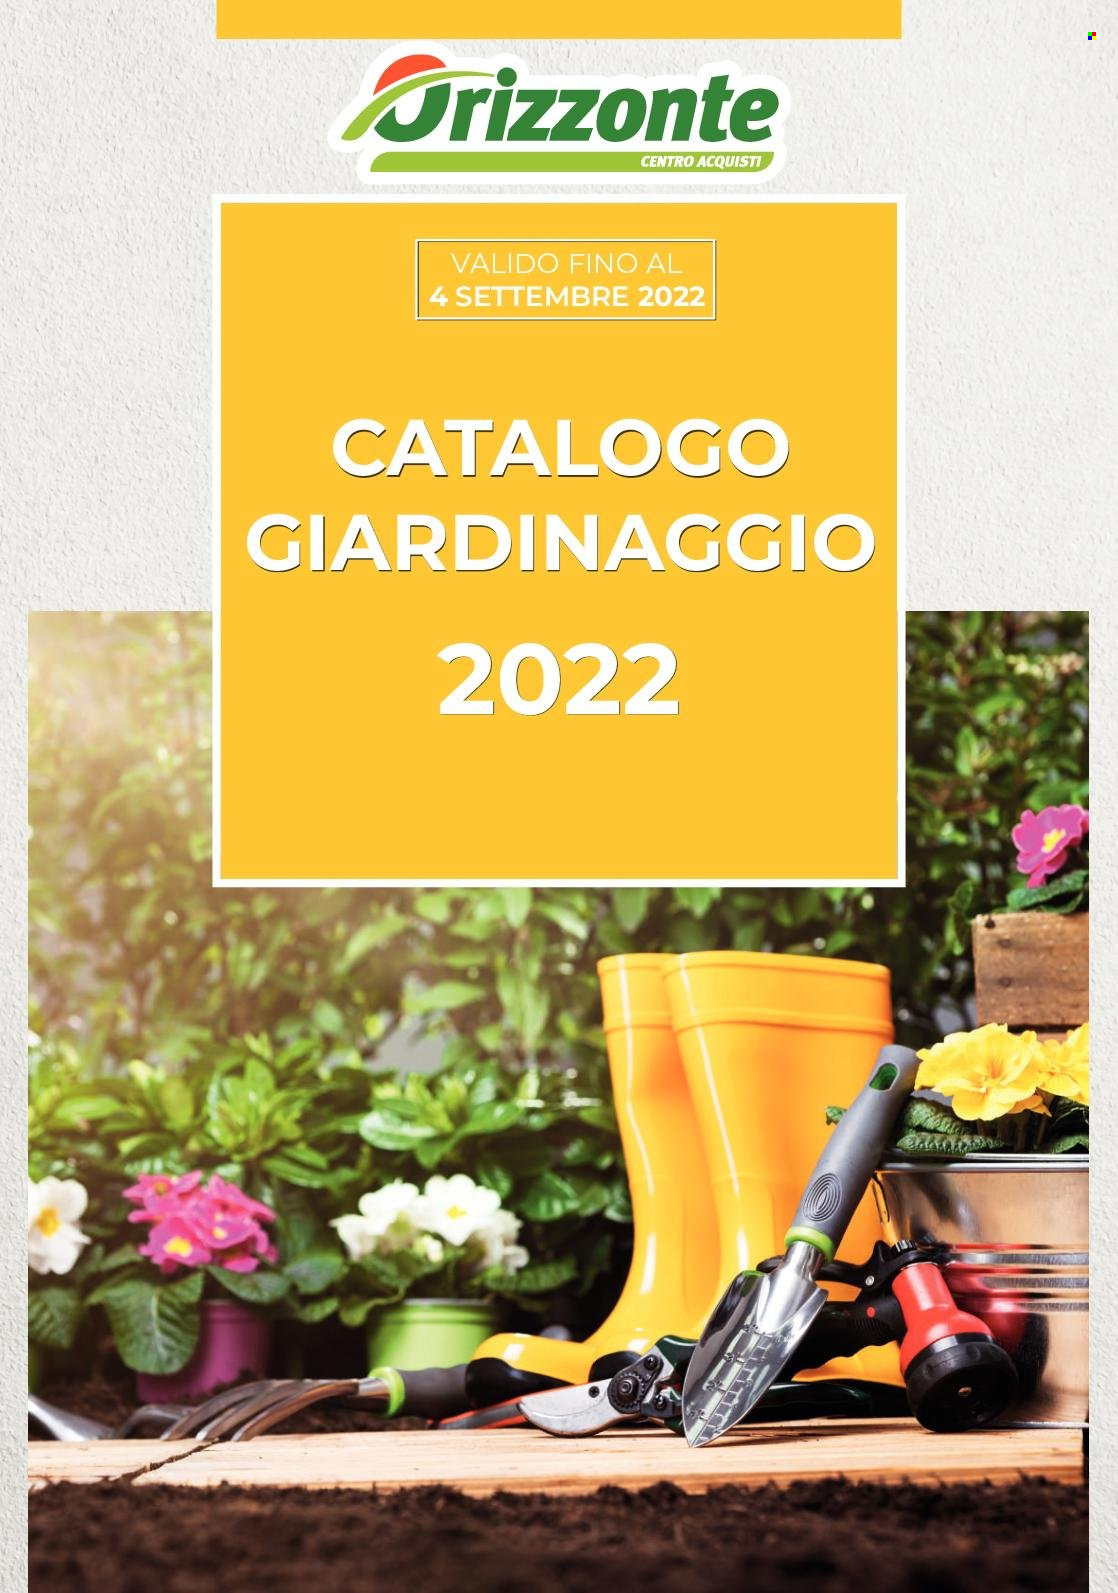 Volantino Orizzonte - 12.6.2022 - 4.9.2022. Pagina 1.